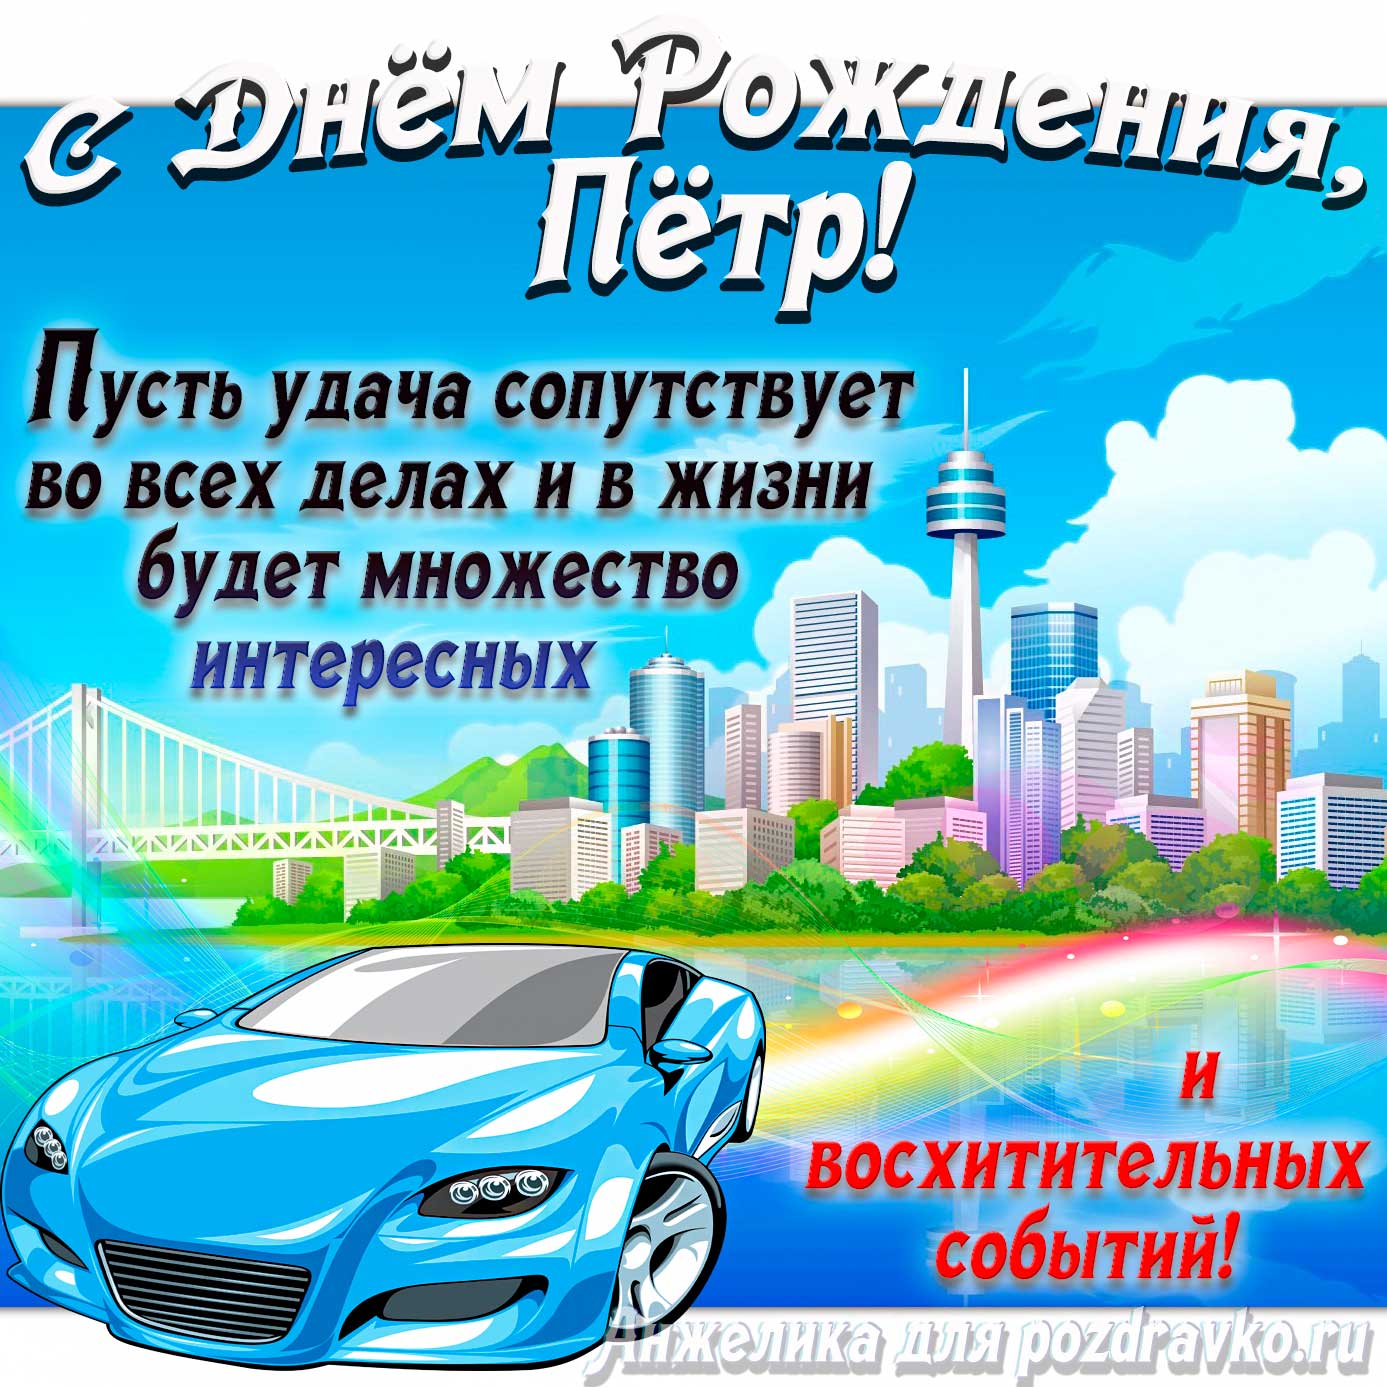 Открытка - с Днём Рождения Пётр с голубой машиной и пожеланием. Скачать бесплатно или отправить картинку.